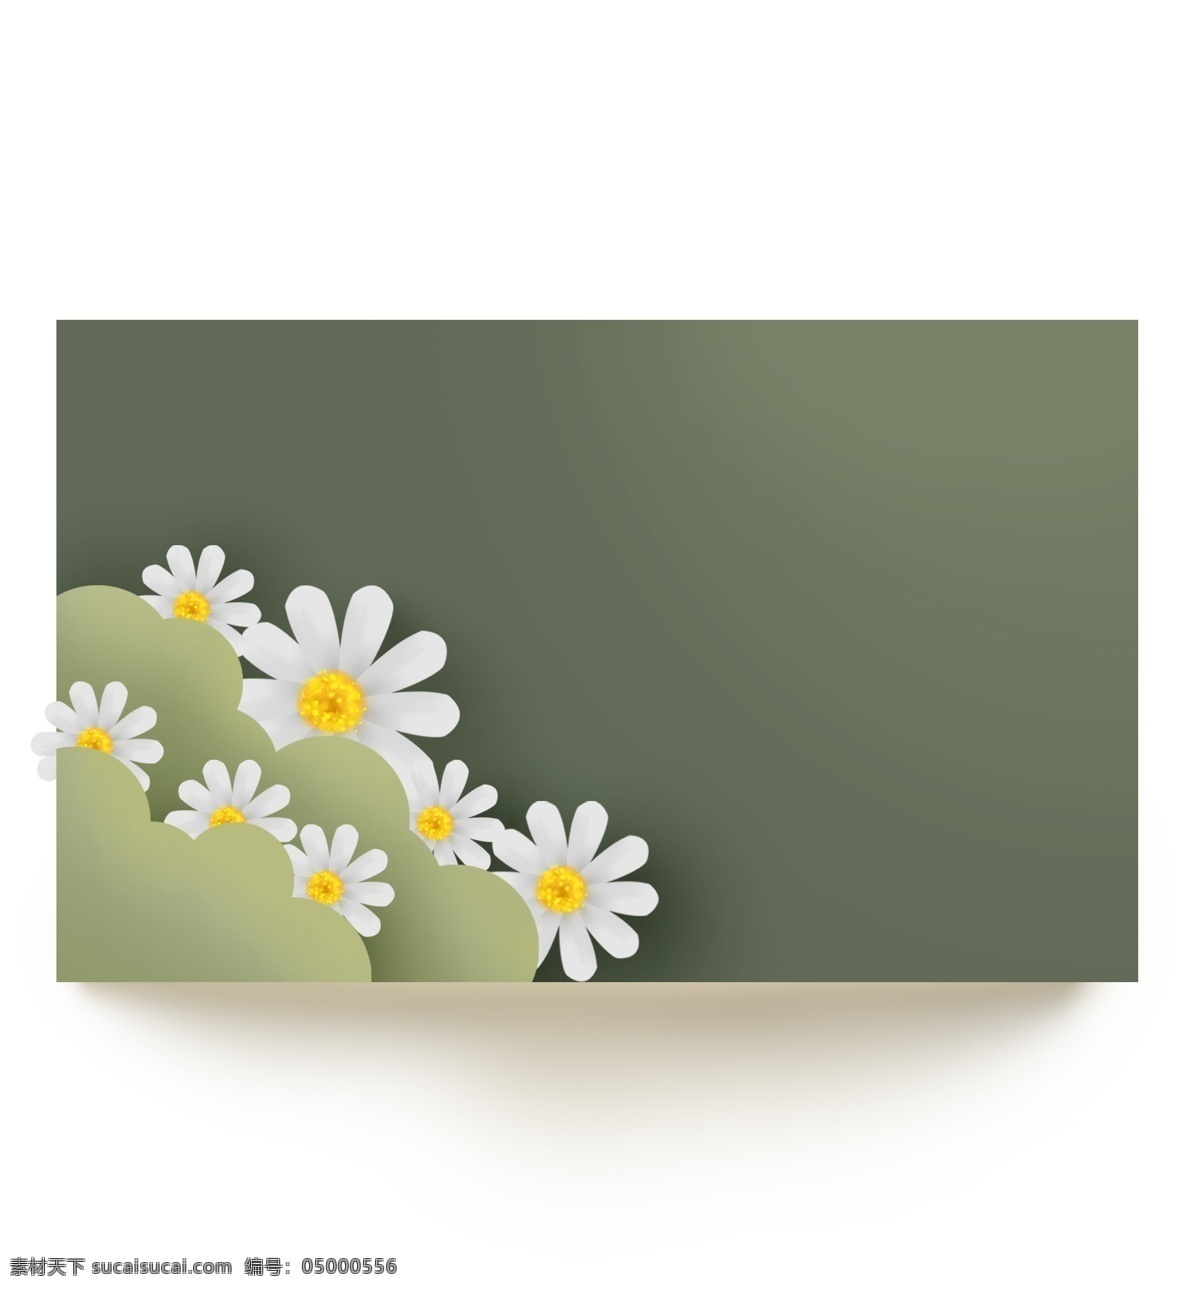 绿色 立体 菊花 提示 框 母菊 菊花对话框 春天文字框 春季 文字 植物 叶子 春天标题框 花朵 留言本